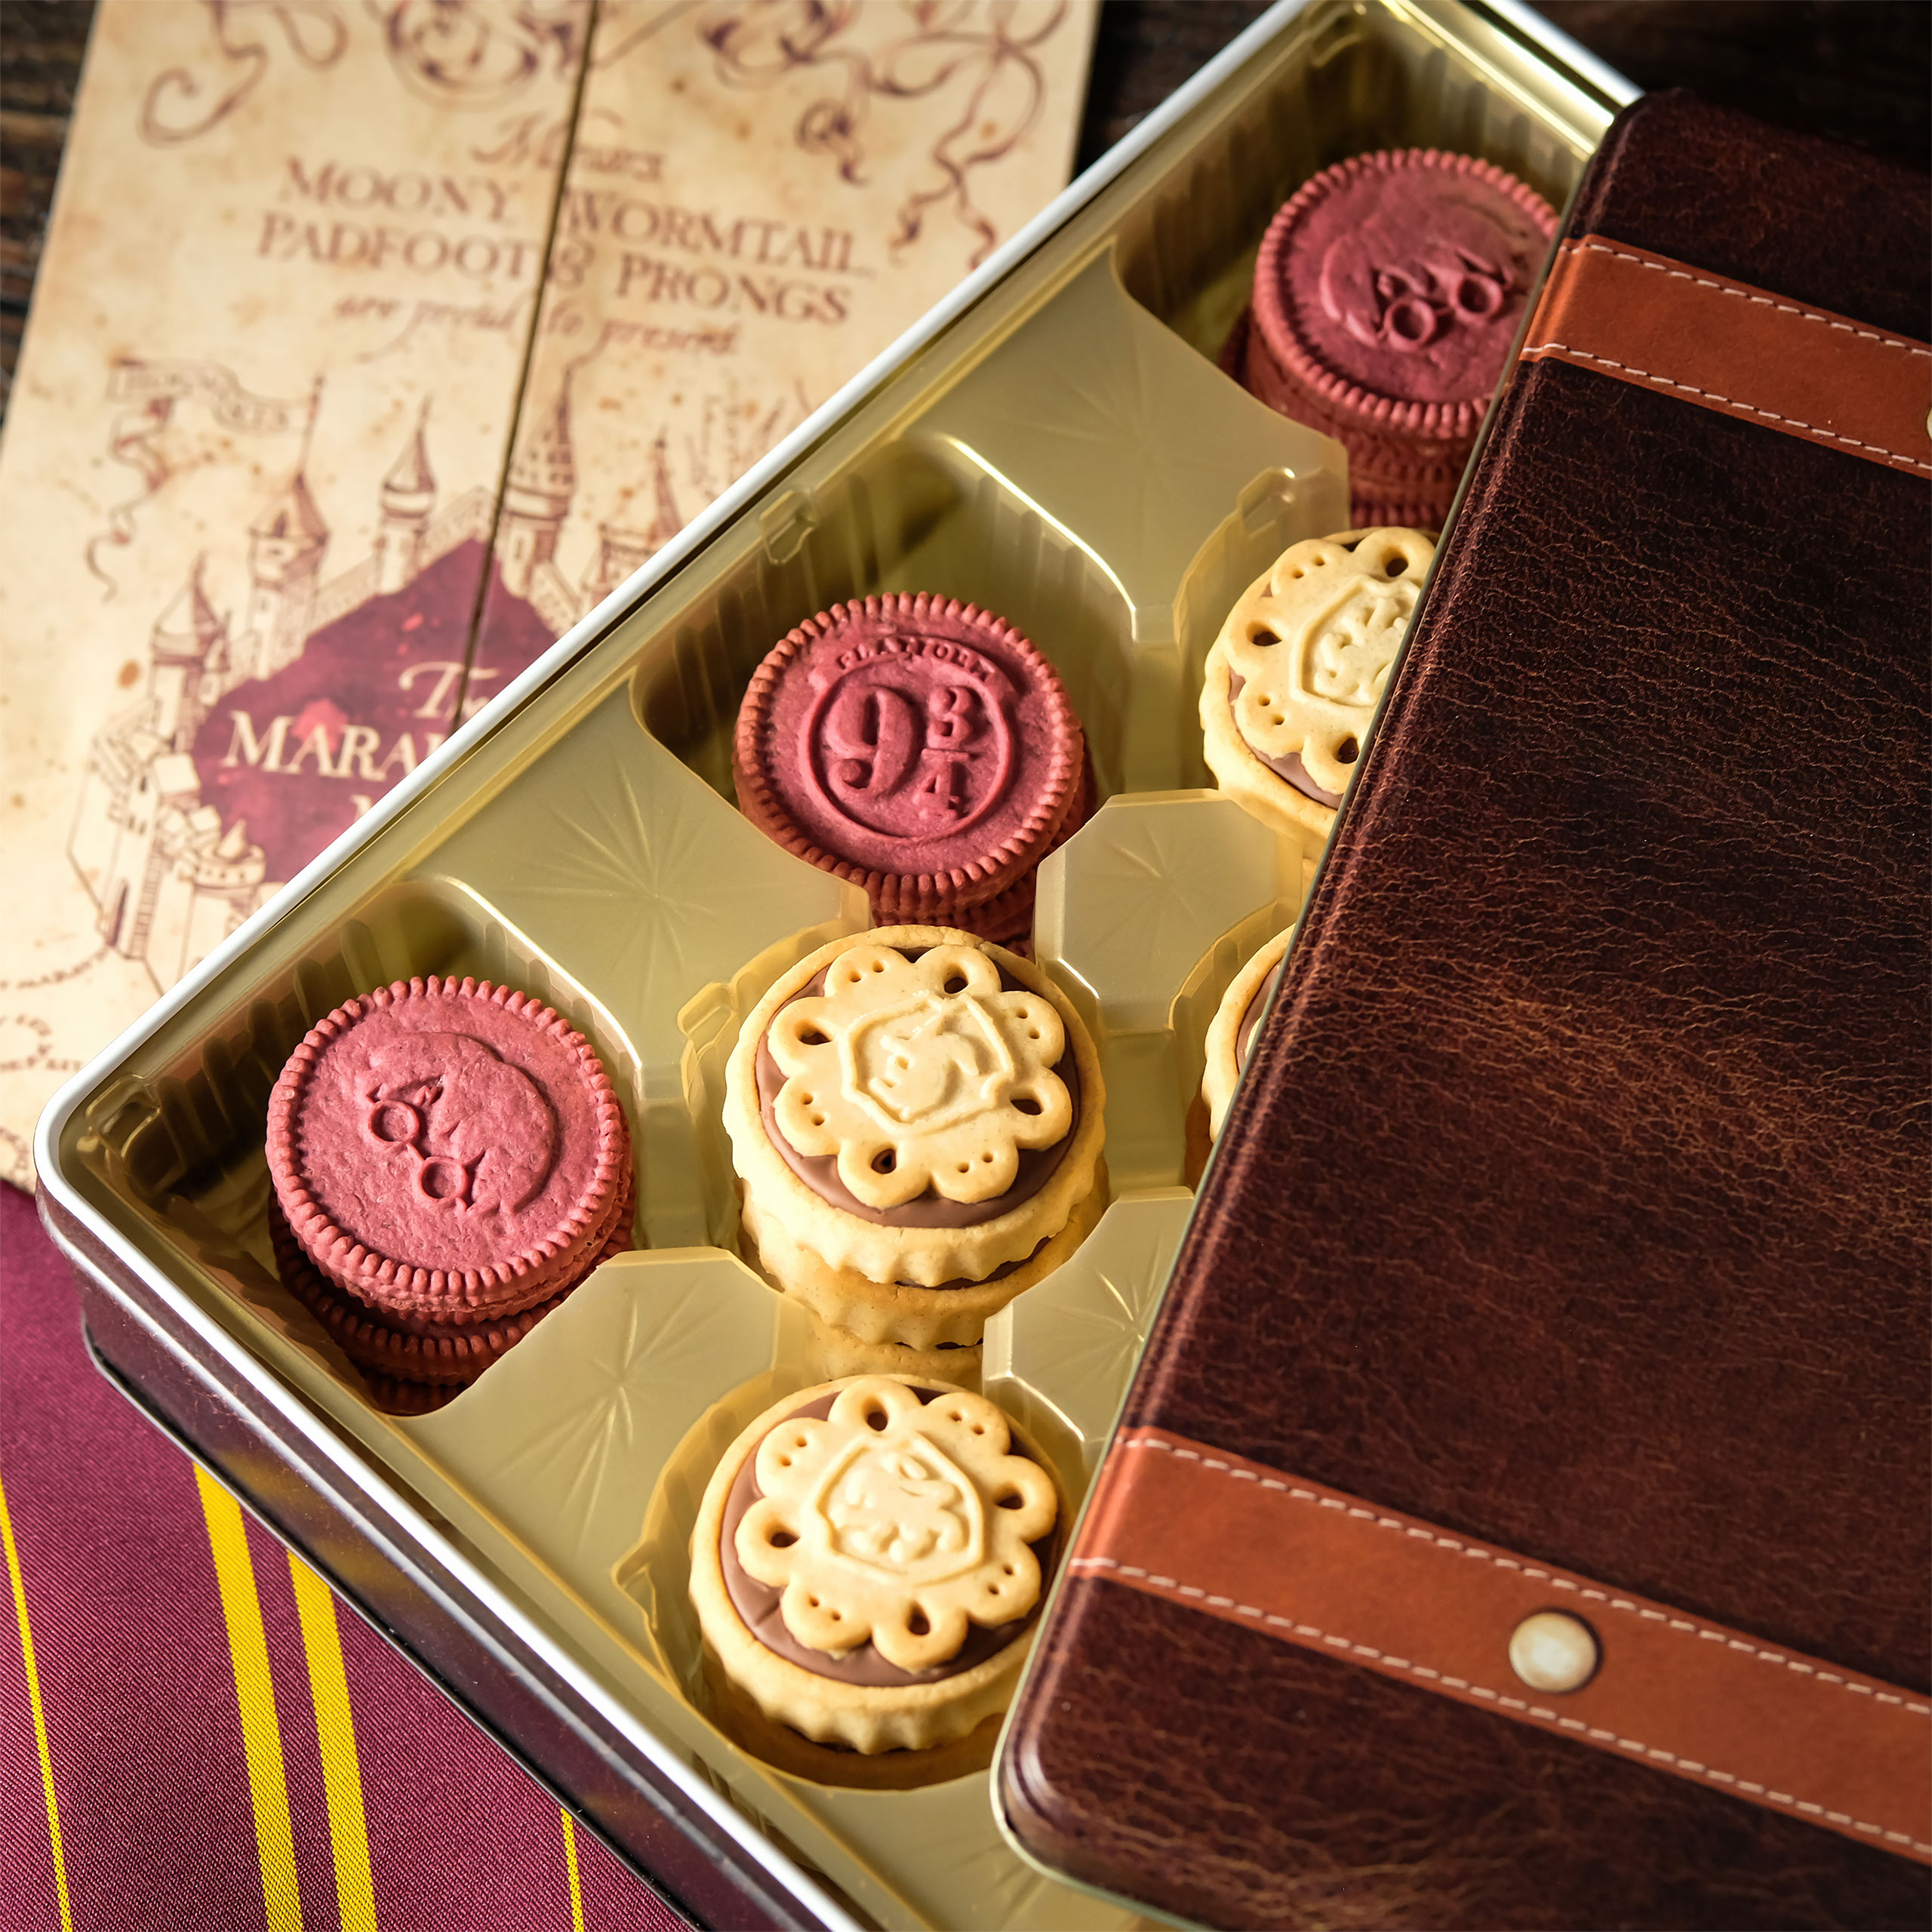 Harry Potter - Mélange de biscuits magiques